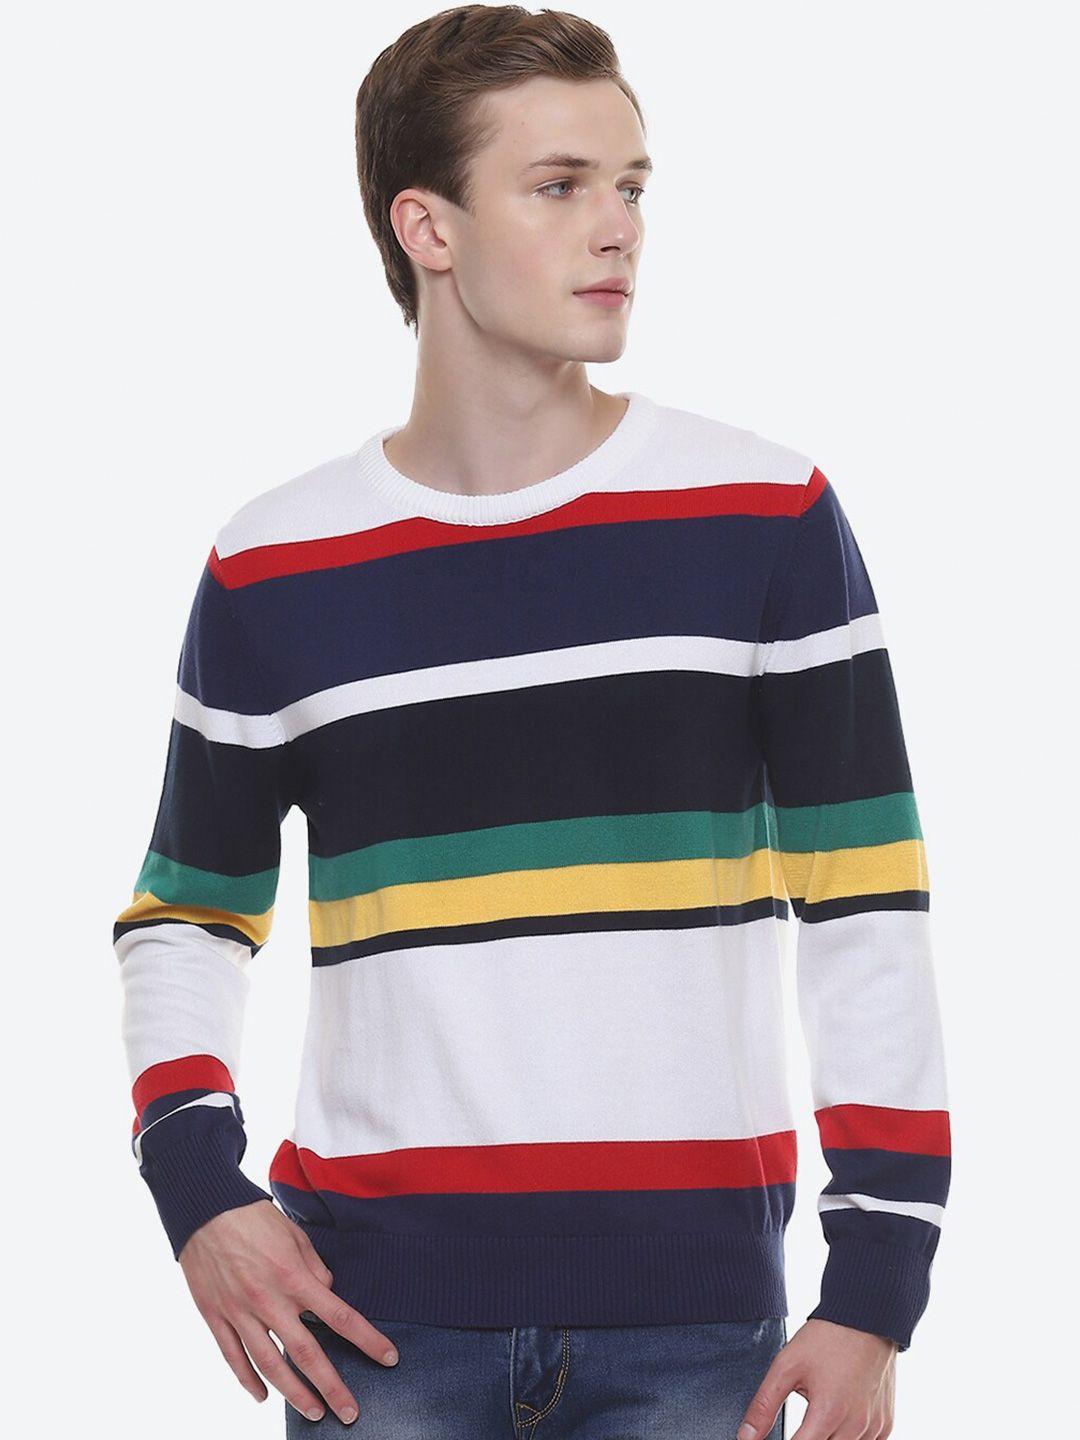 2bme colourblocked pullover cotton sweater